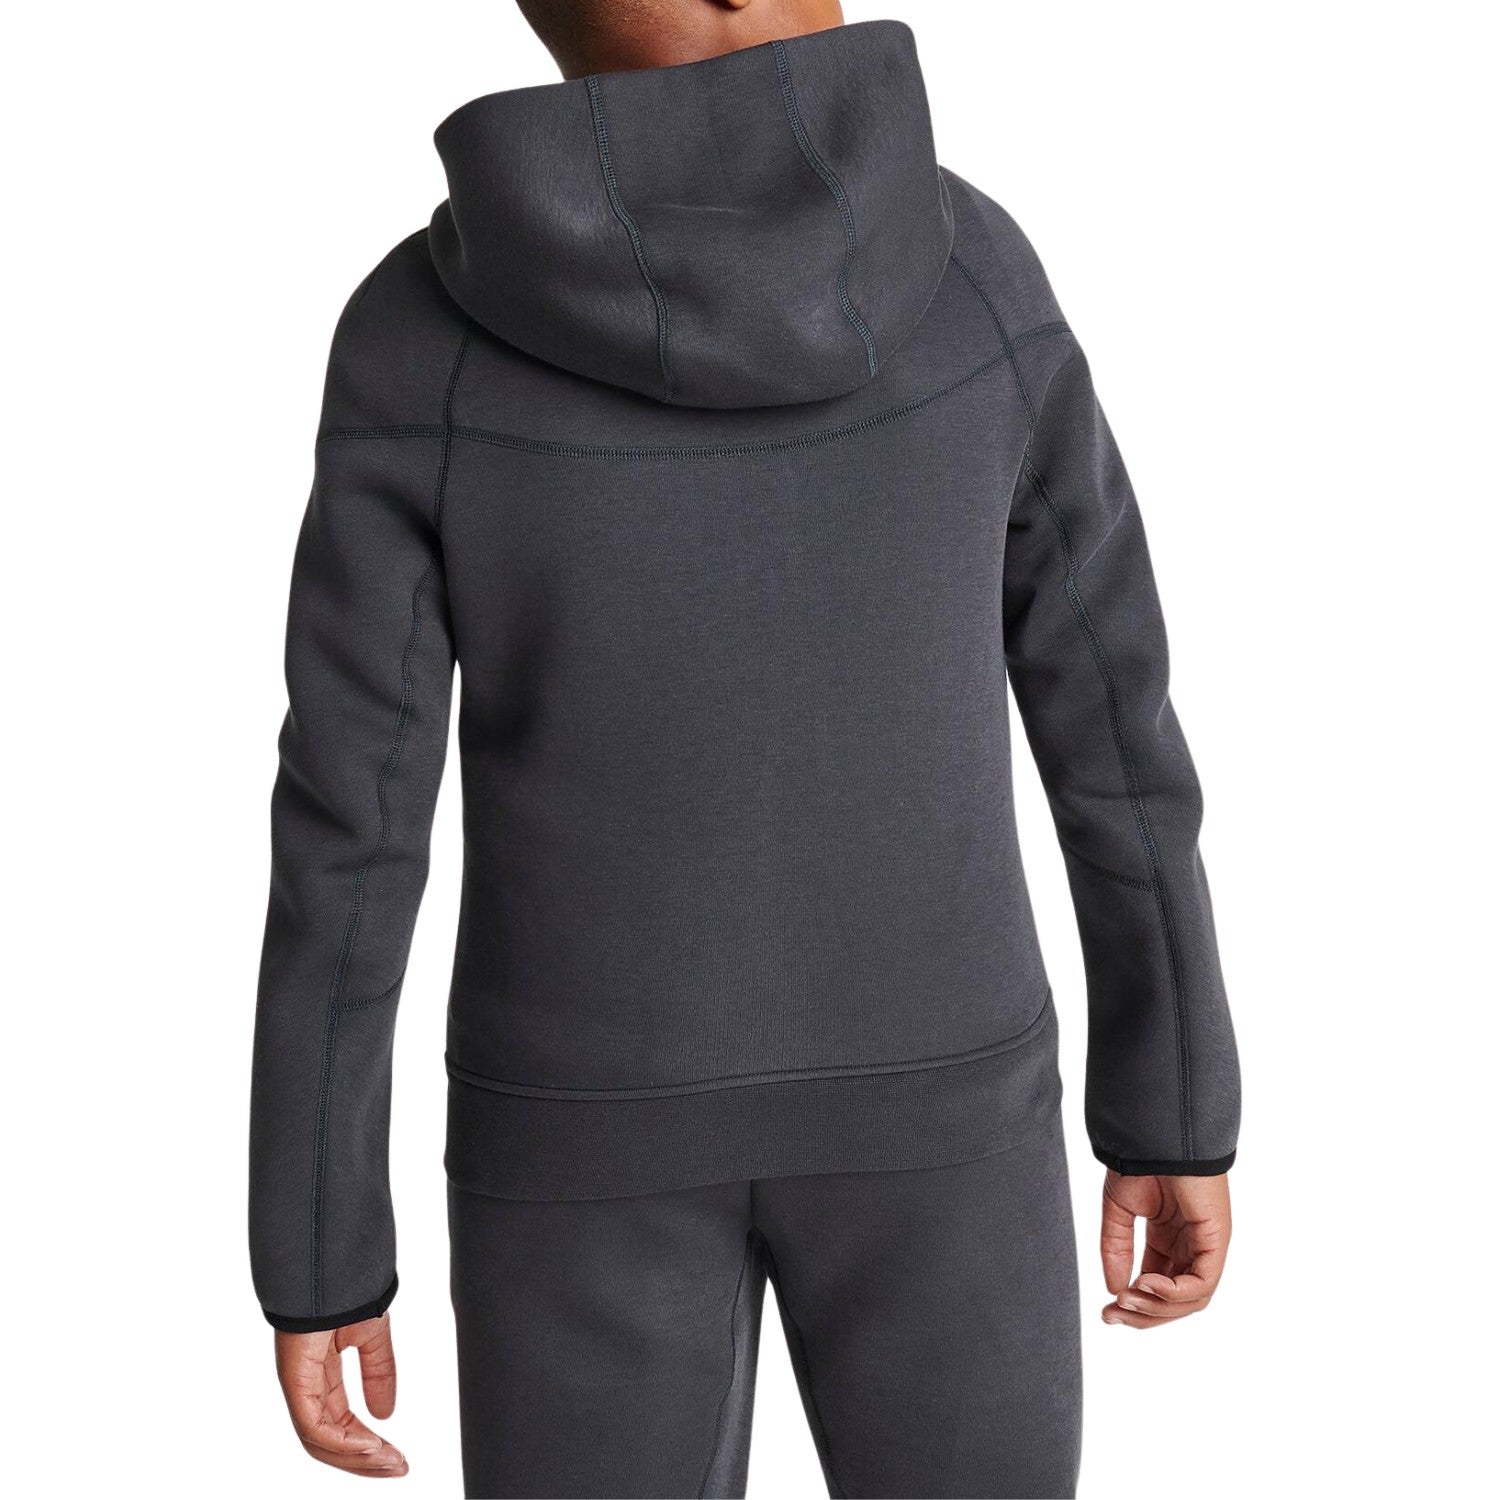 Nike Sportswear Tech Fleece Full-zip Hoodie Big Kids Style : Fd3285